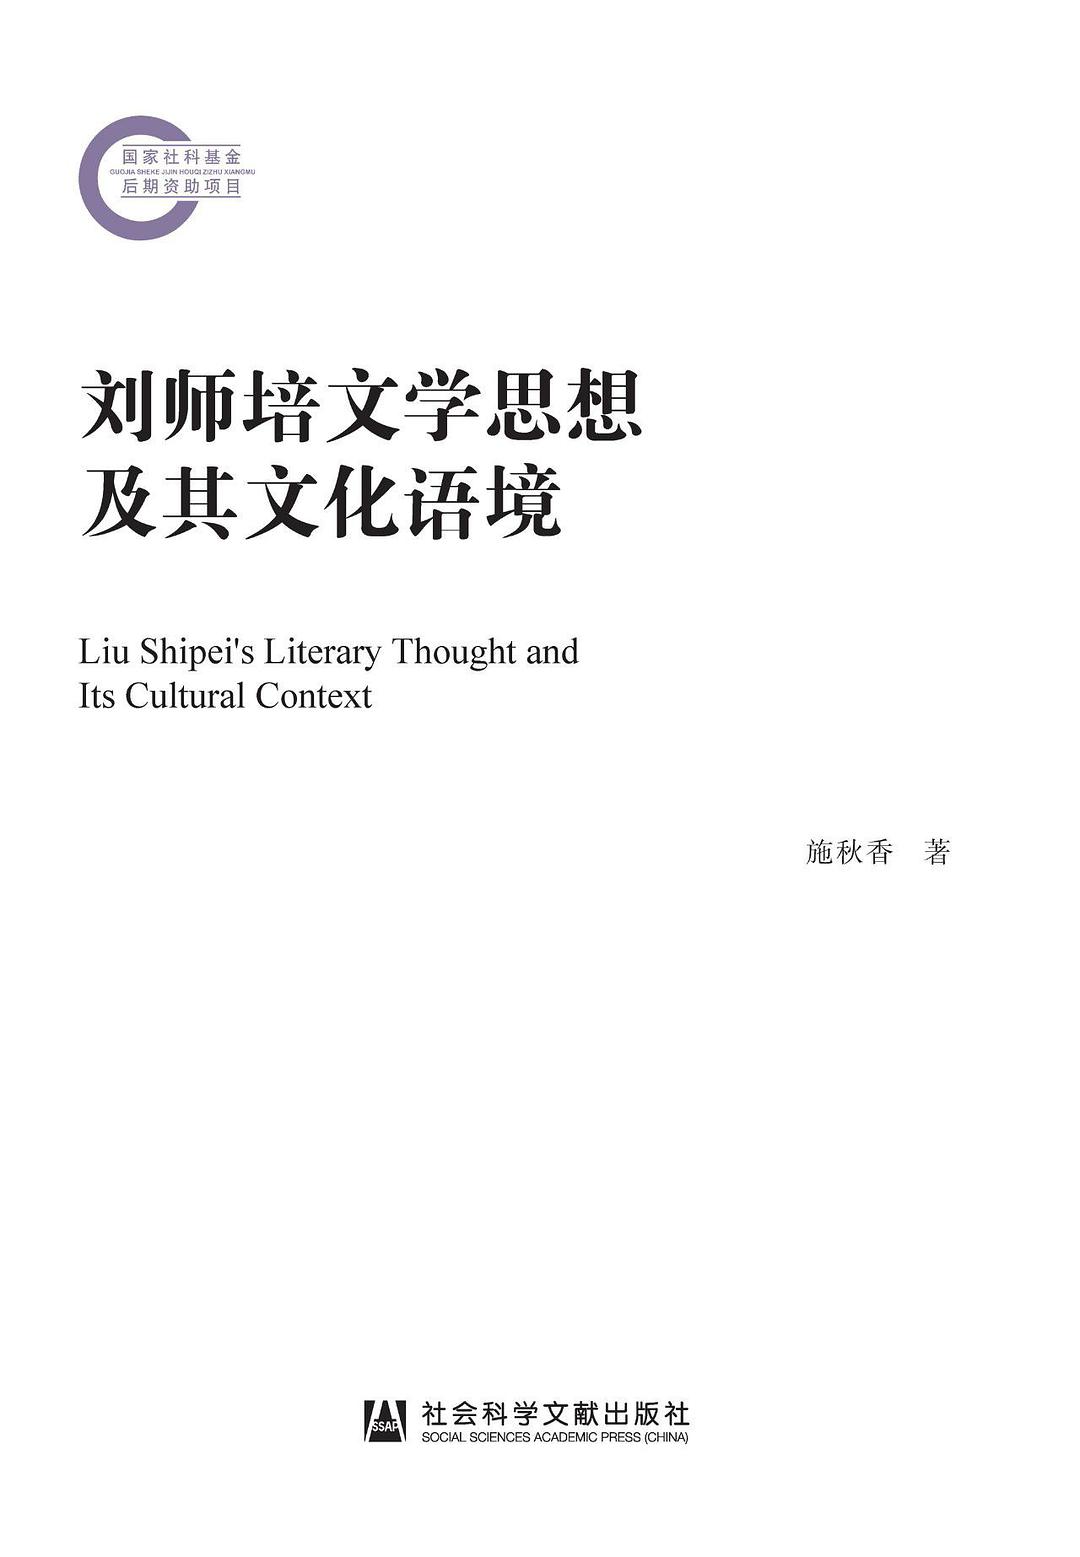 刘师培文学思想及其文化语境